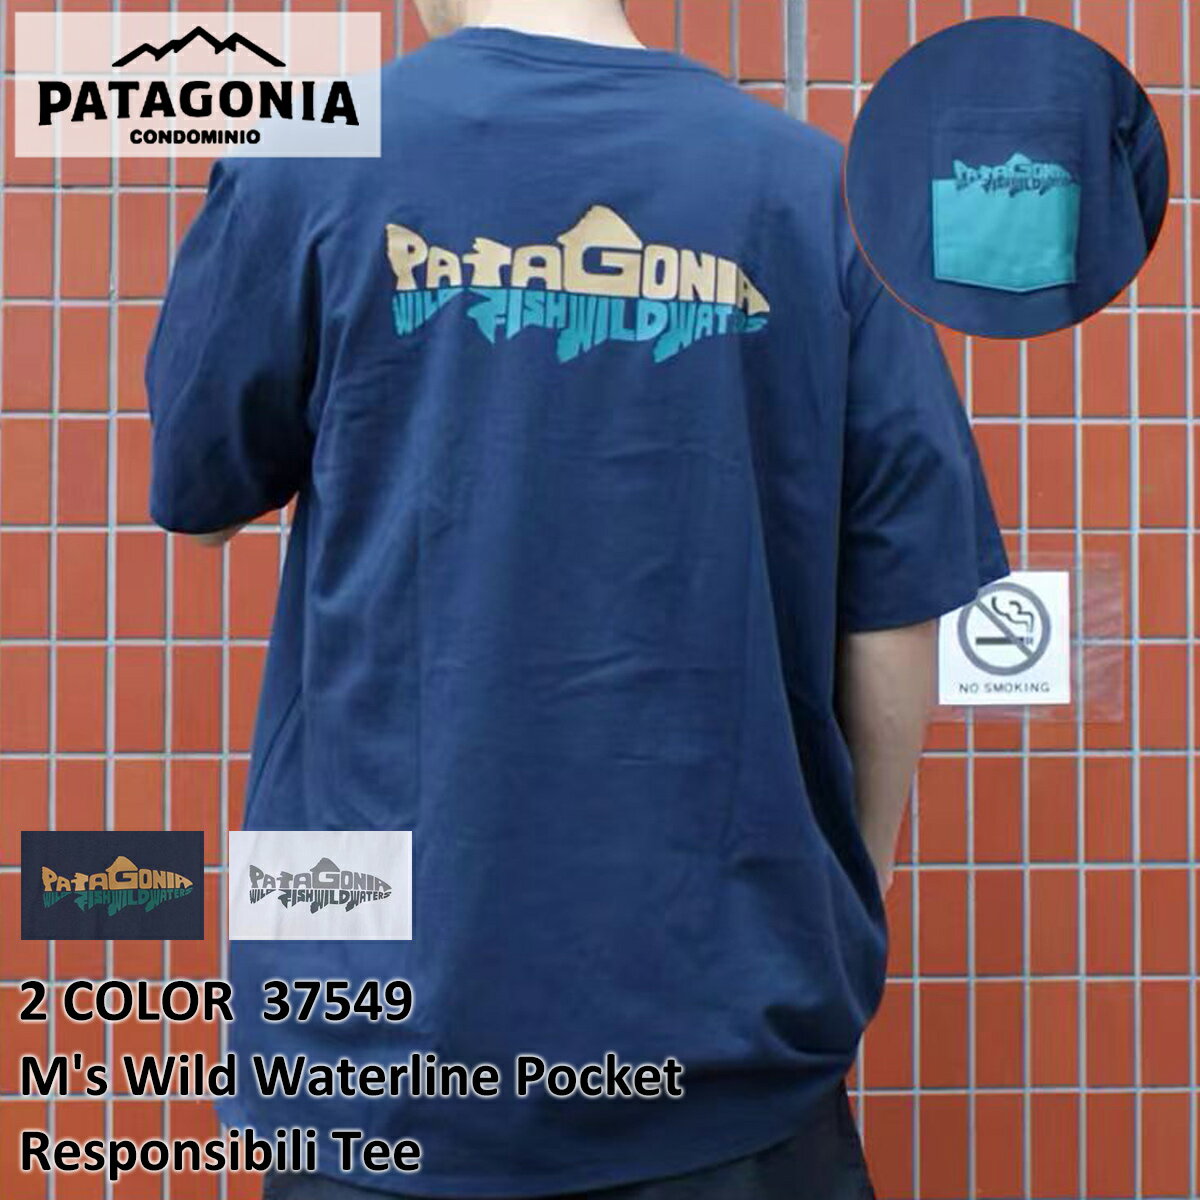 送料無料 新品 パタゴニア Patagonia M's Wild Waterline Pocket Responsibili Tee 37549 メンズ ワイルド ウォーターライン ポケット レスポンシビリ Tシャツ アウトドア キャンプ 山 海 サーフィン ハイキング 新作 Tシャツ『並行輸入品』